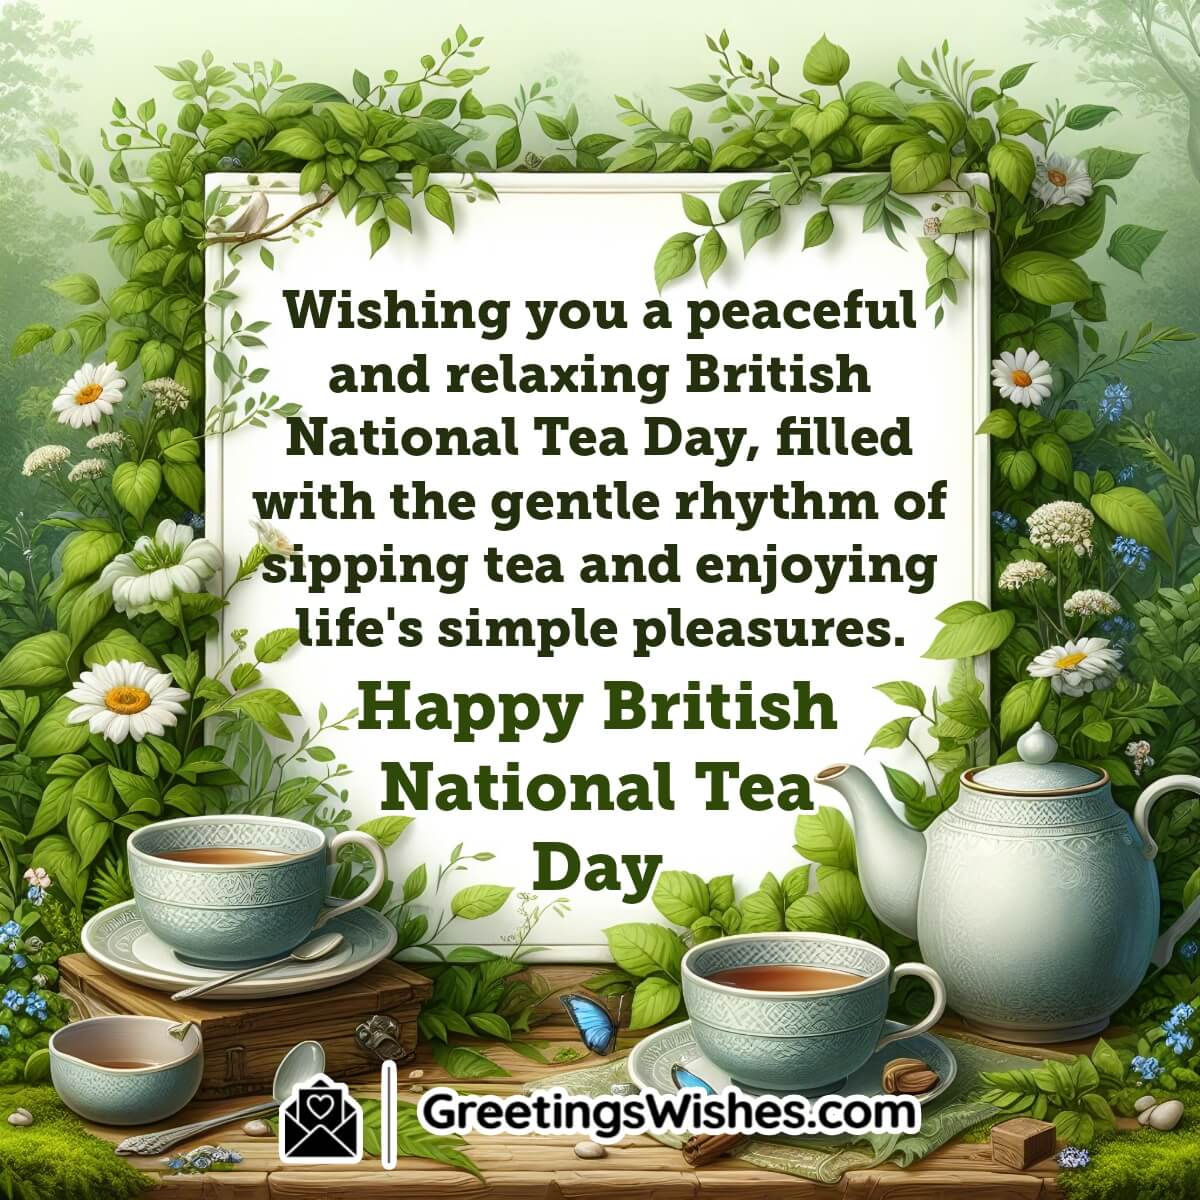 Happy British National Tea Day Wish Image